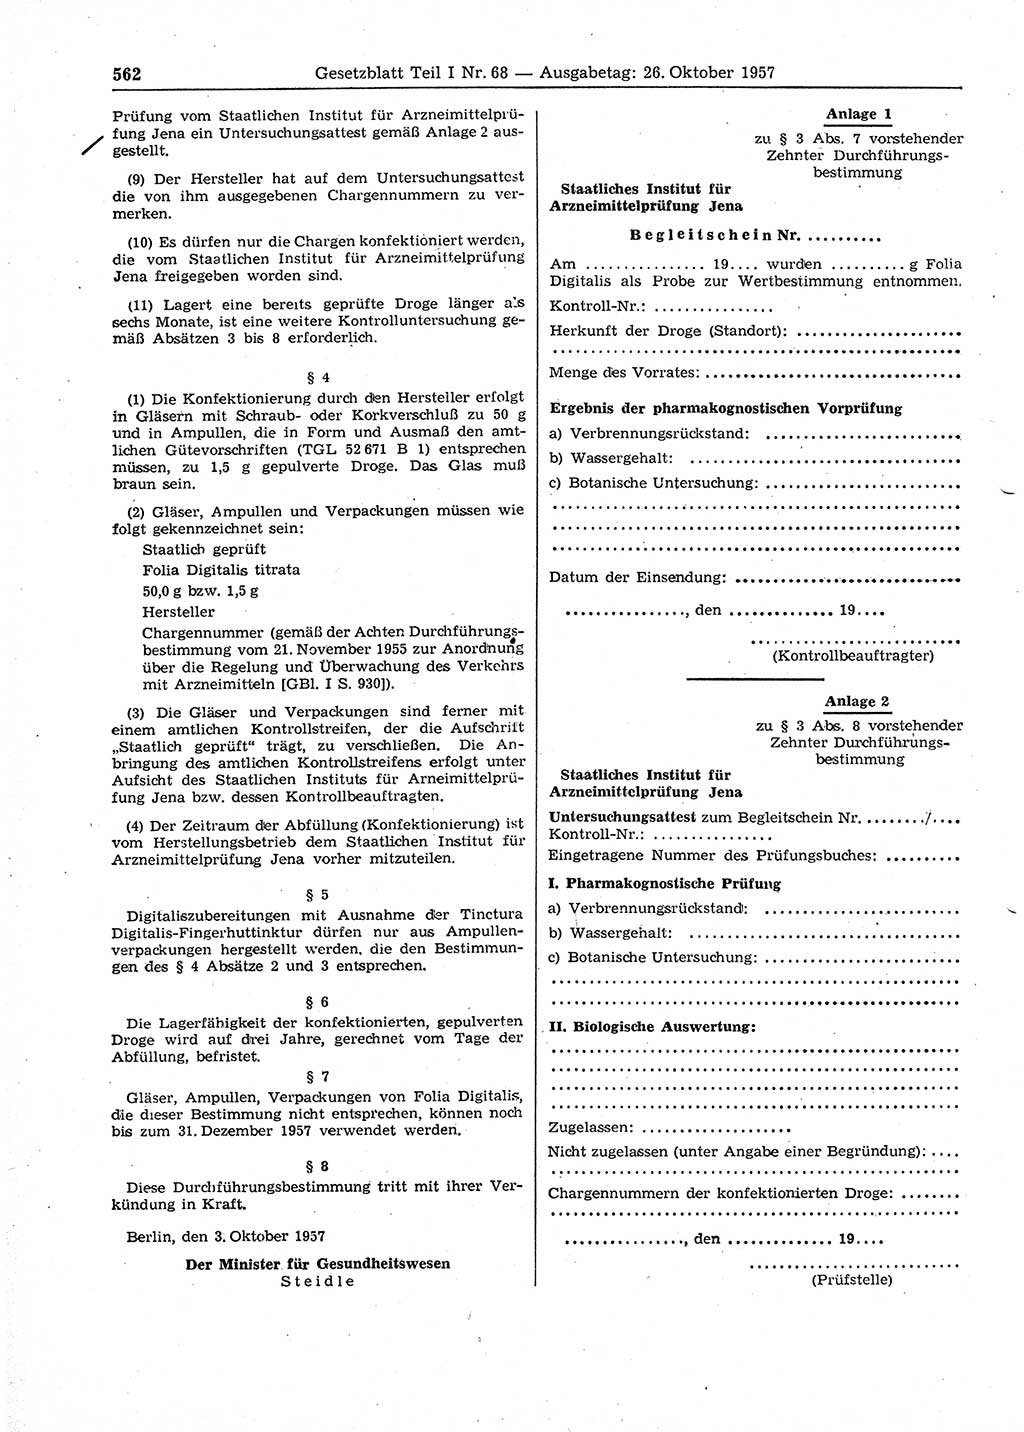 Gesetzblatt (GBl.) der Deutschen Demokratischen Republik (DDR) Teil Ⅰ 1957, Seite 562 (GBl. DDR Ⅰ 1957, S. 562)